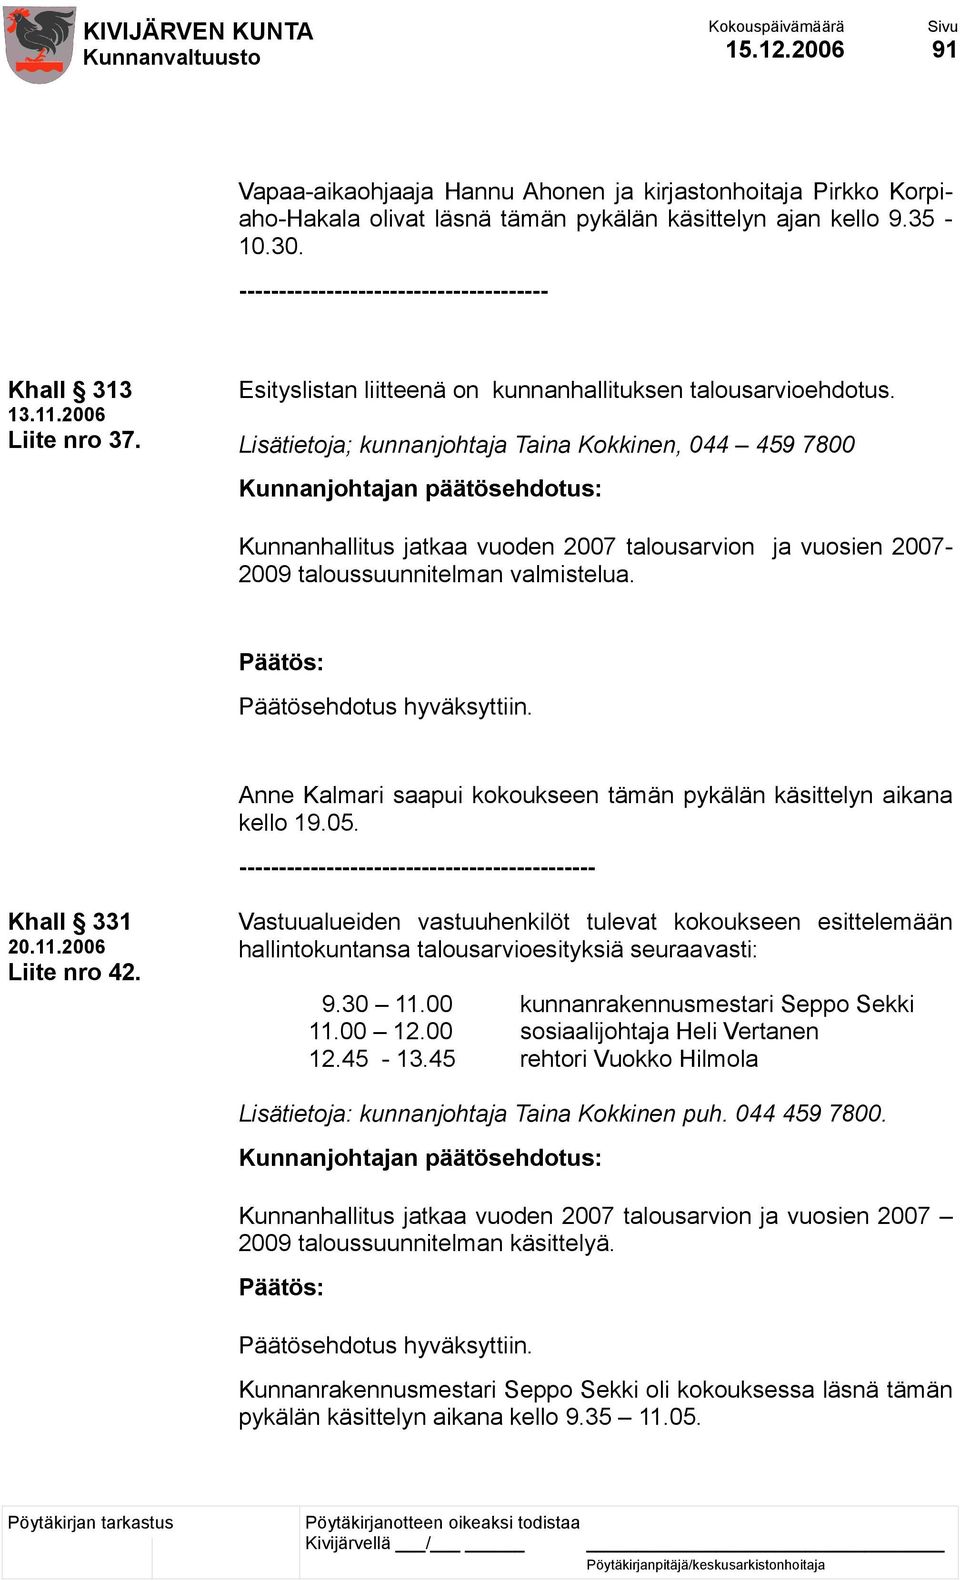 Lisätietoja; kunnanjohtaja Taina Kokkinen, 044 459 7800 Kunnanjohtajan päätösehdotus: Kunnanhallitus jatkaa vuoden 2007 talousarvion ja vuosien 2007-2009 taloussuunnitelman valmistelua.